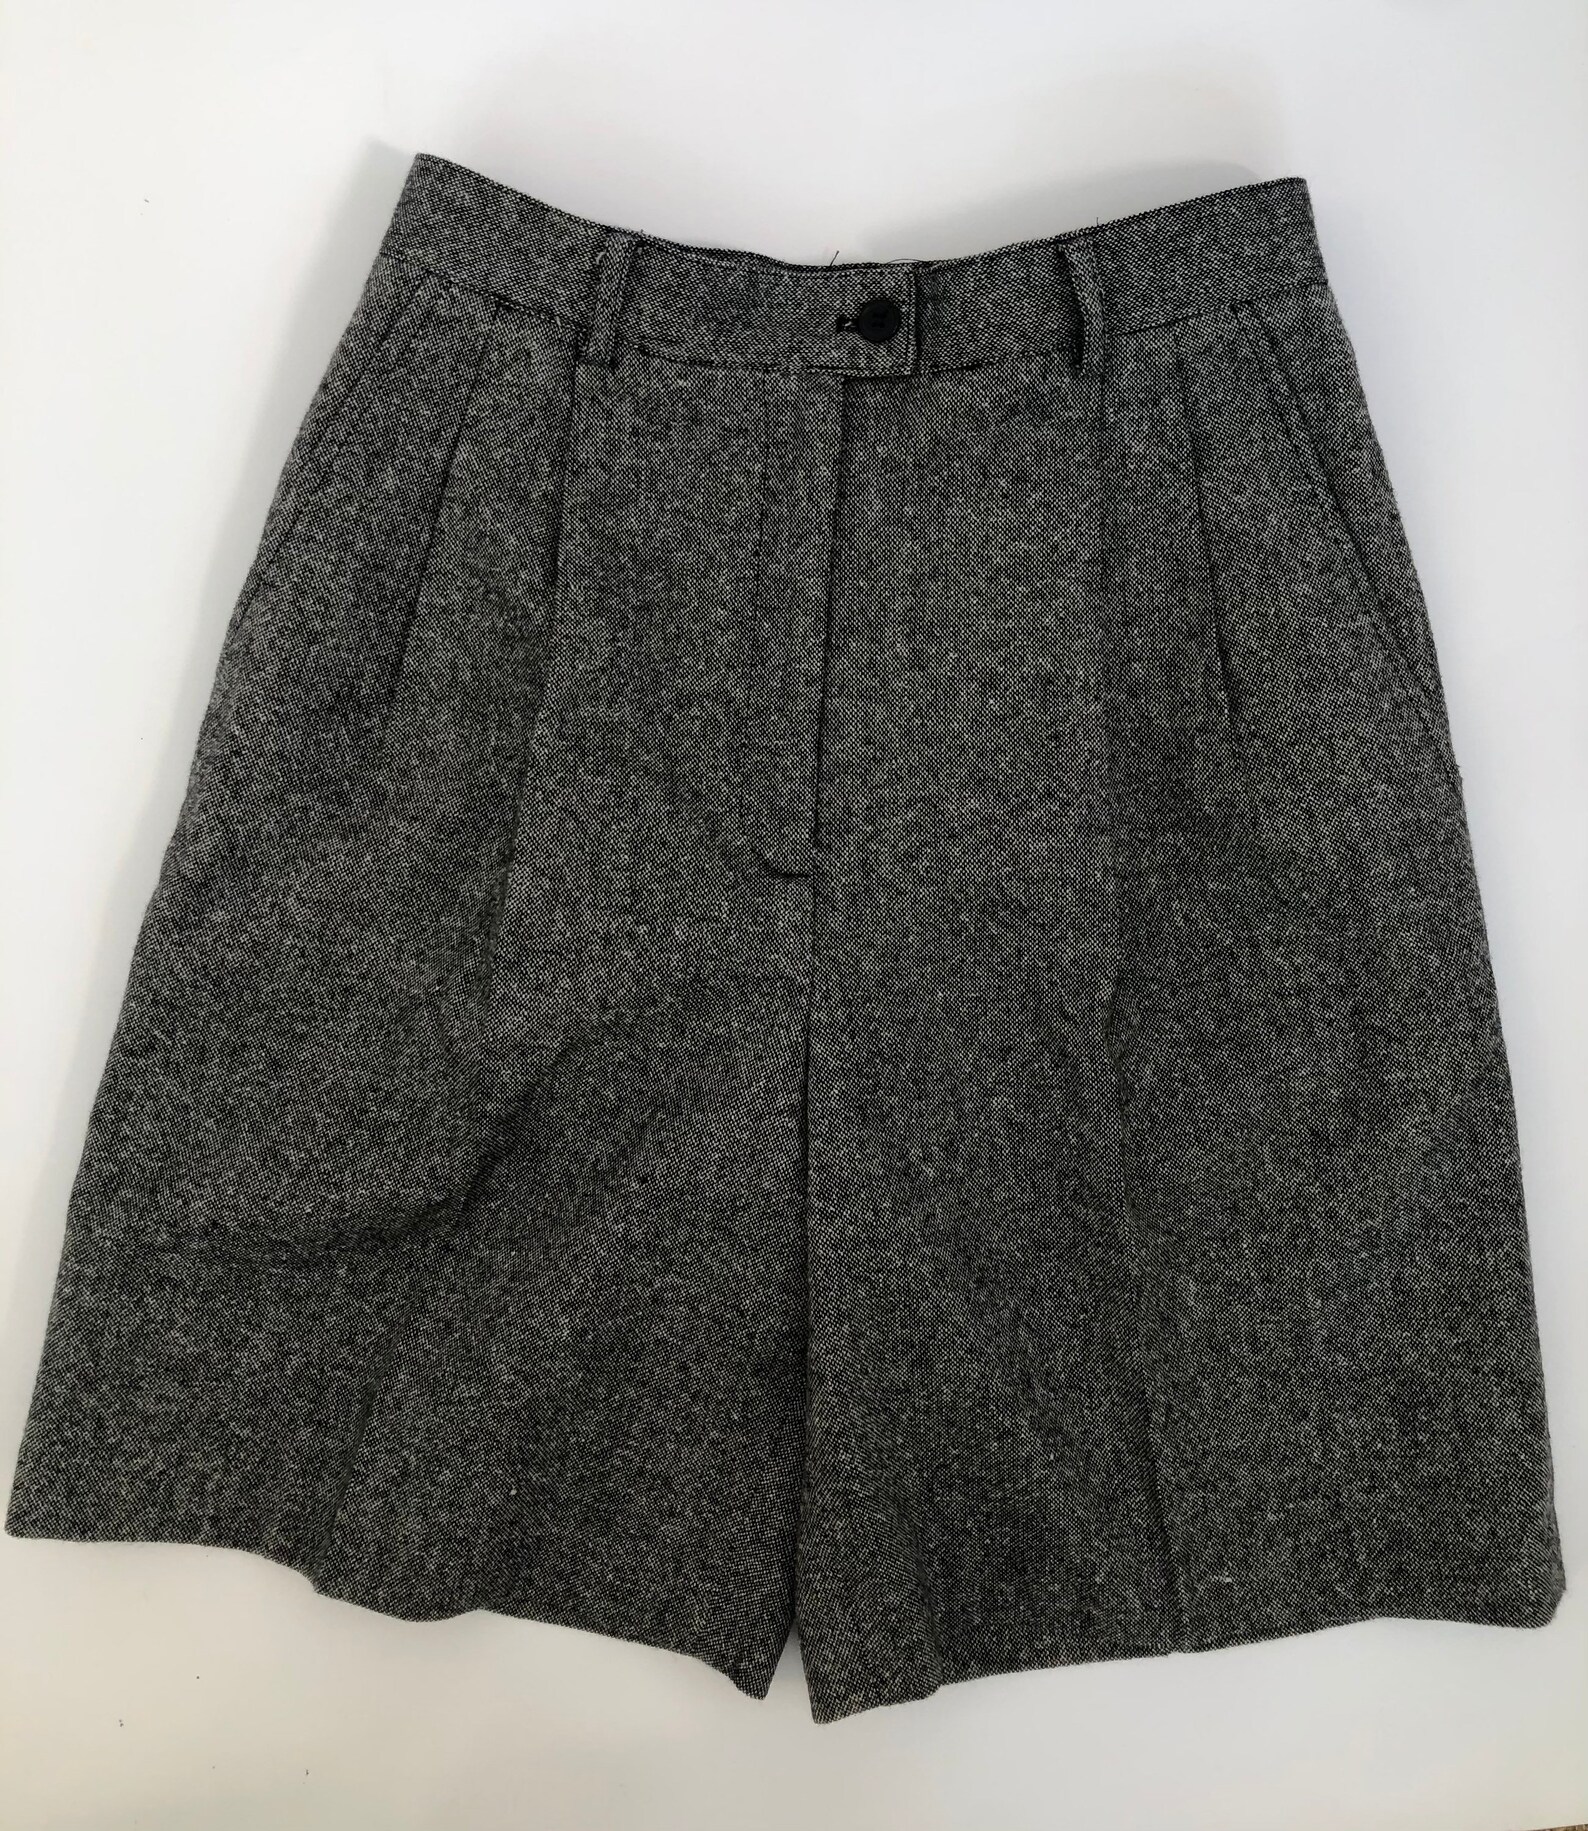 Vintage 1980s wool Bermuda shorts | Etsy